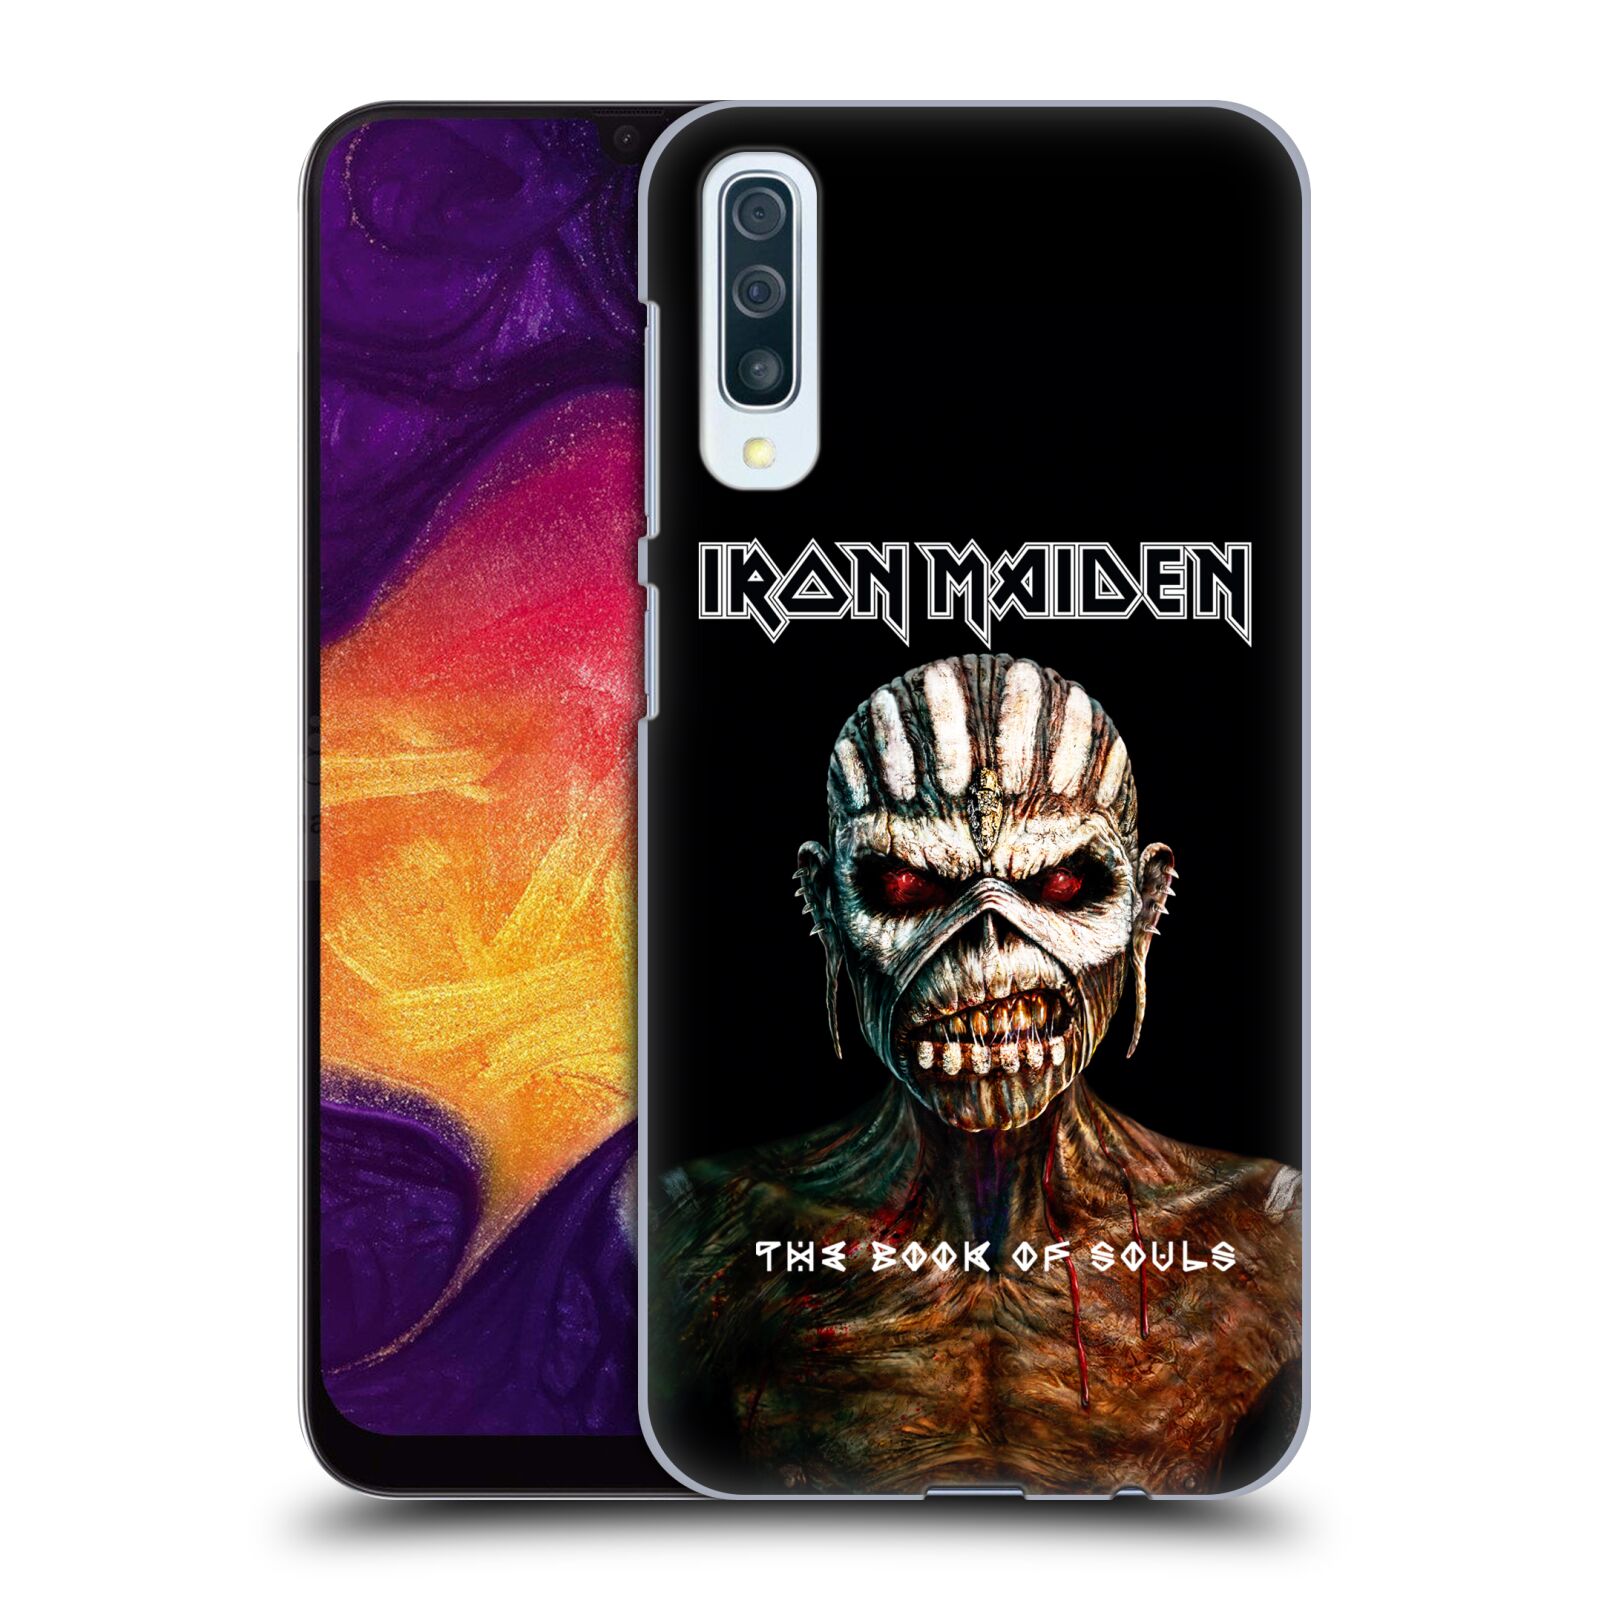 Plastové pouzdro na mobil Samsung Galaxy A50 / A30s - Head Case - Iron Maiden - The Book Of Souls (Plastový kryt, pouzdro, obal na mobilní telefon Samsung Galaxy A50 / A30s z roku 2019 s motivem Iron Maiden - The Book Of Souls)